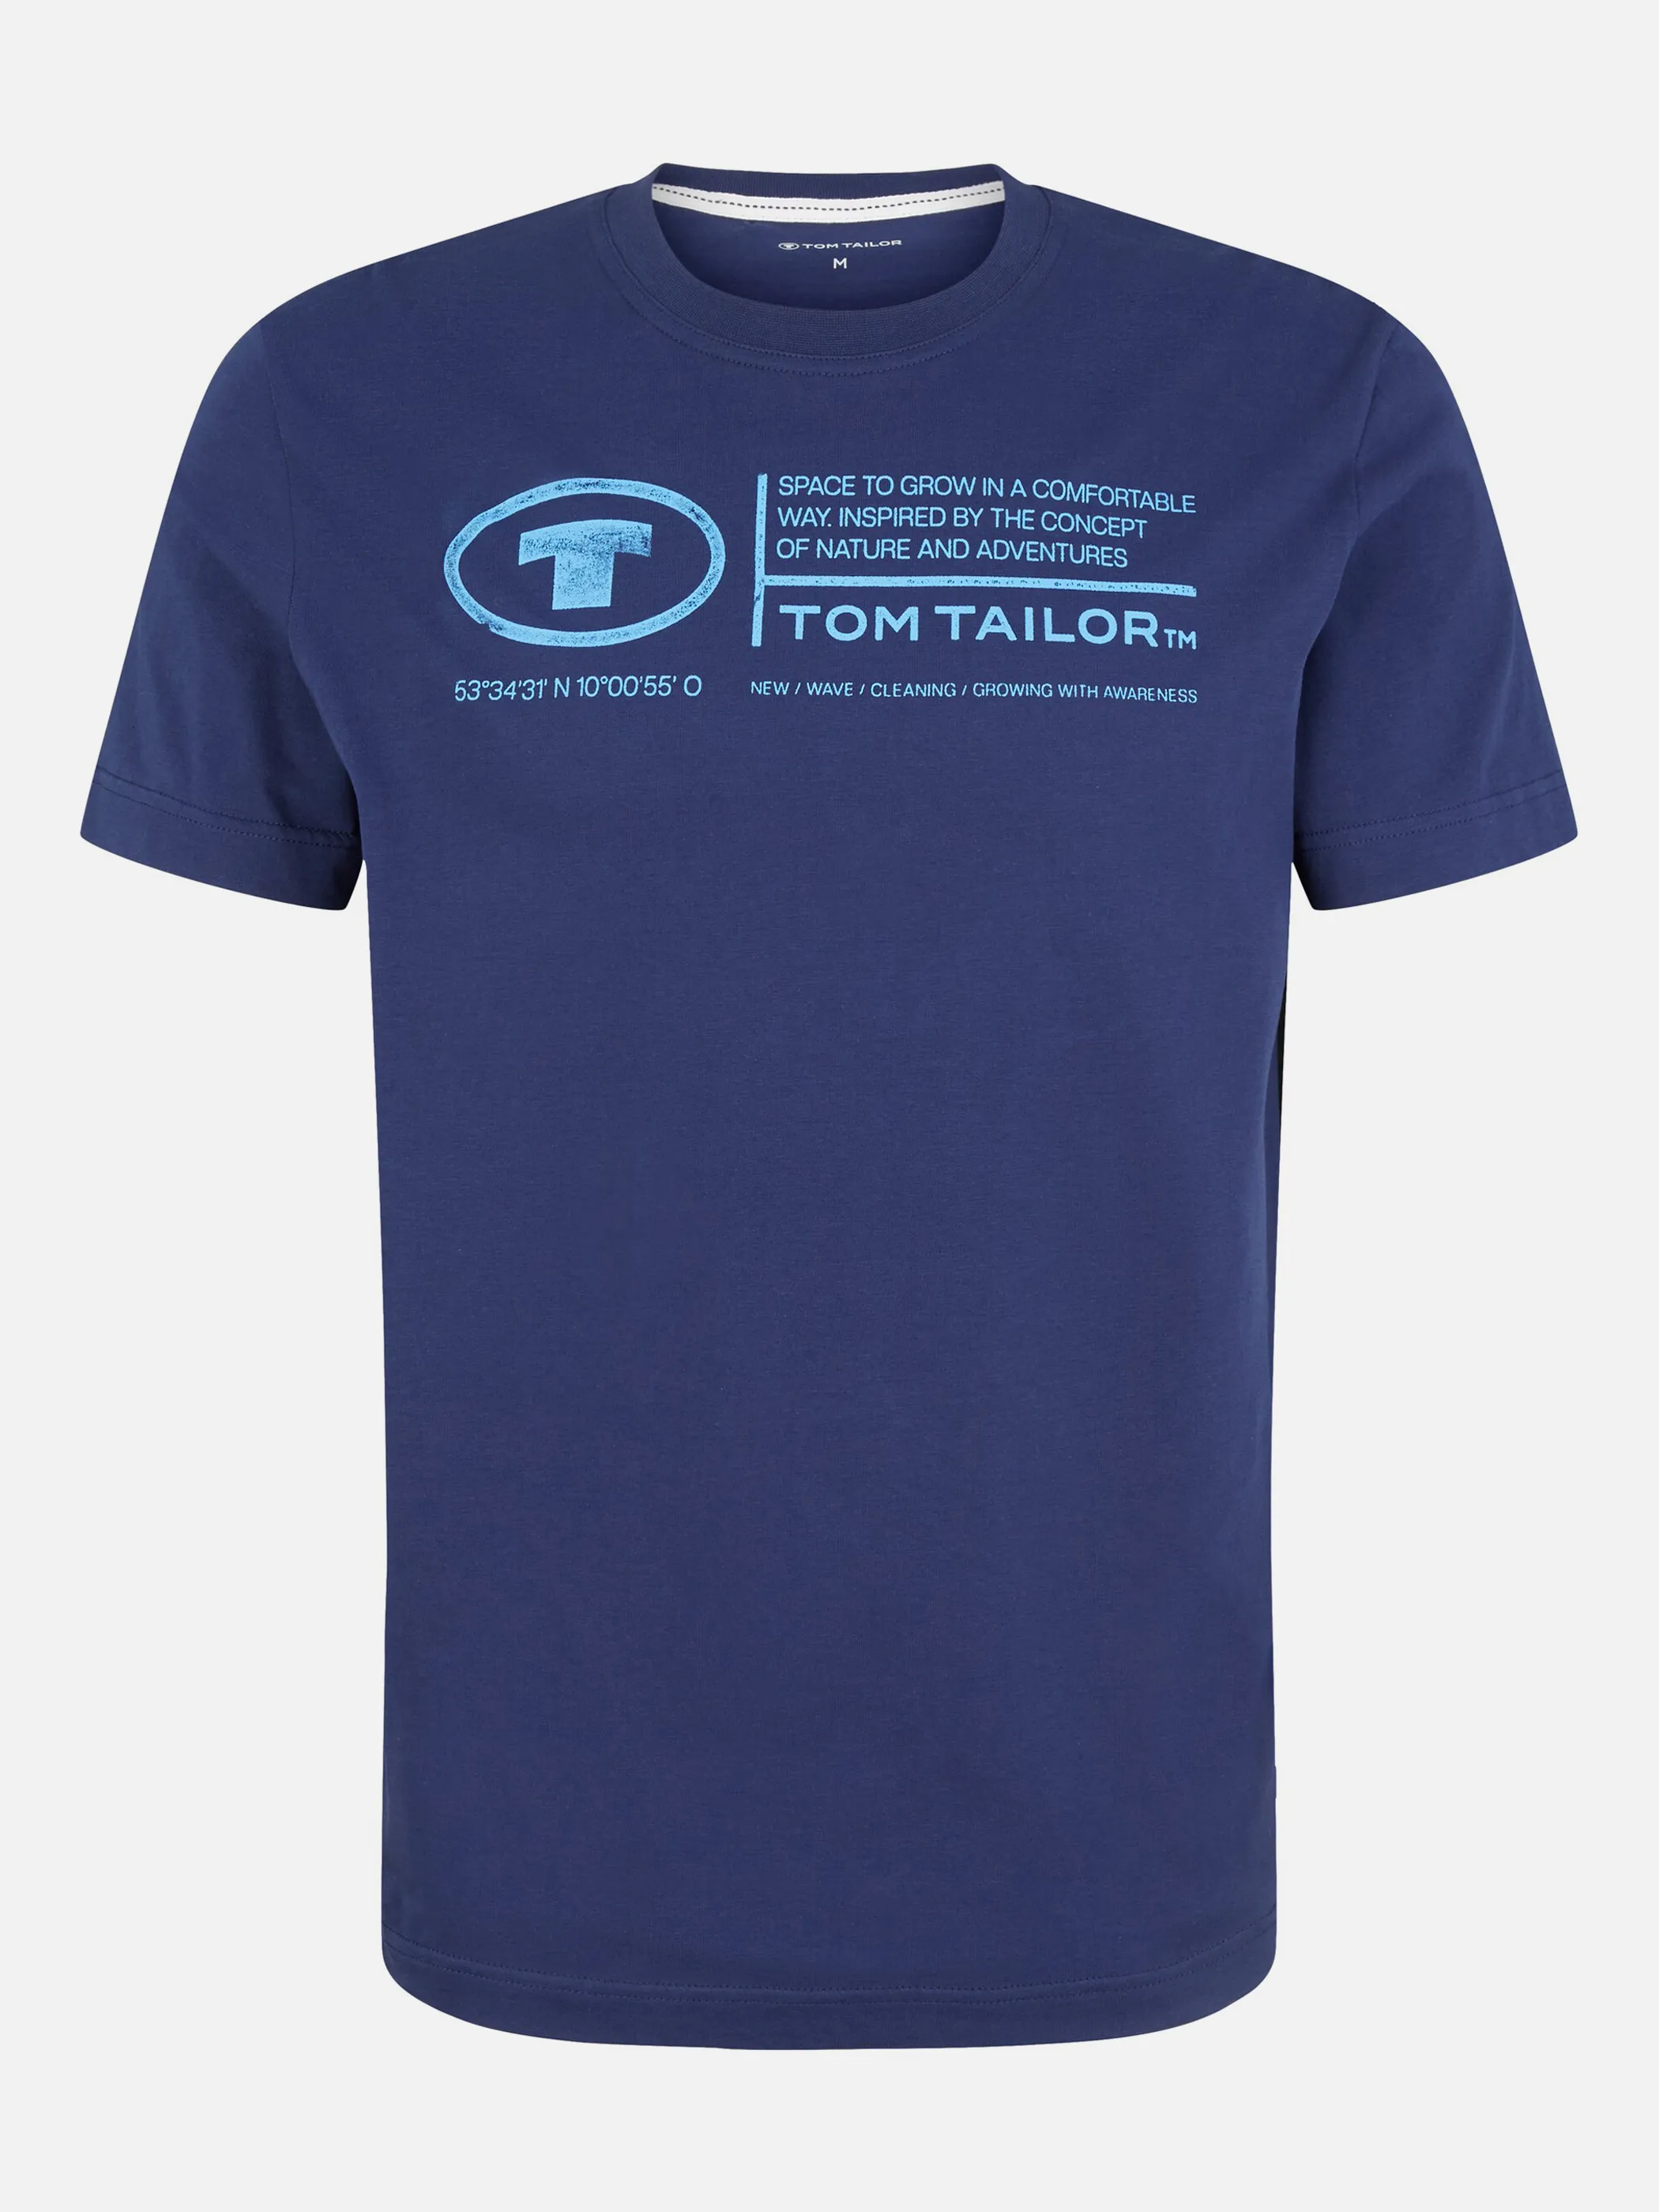 Tom Tailor 1035611 NOS printed crewneck t-shirt Blau 874939 10311 1